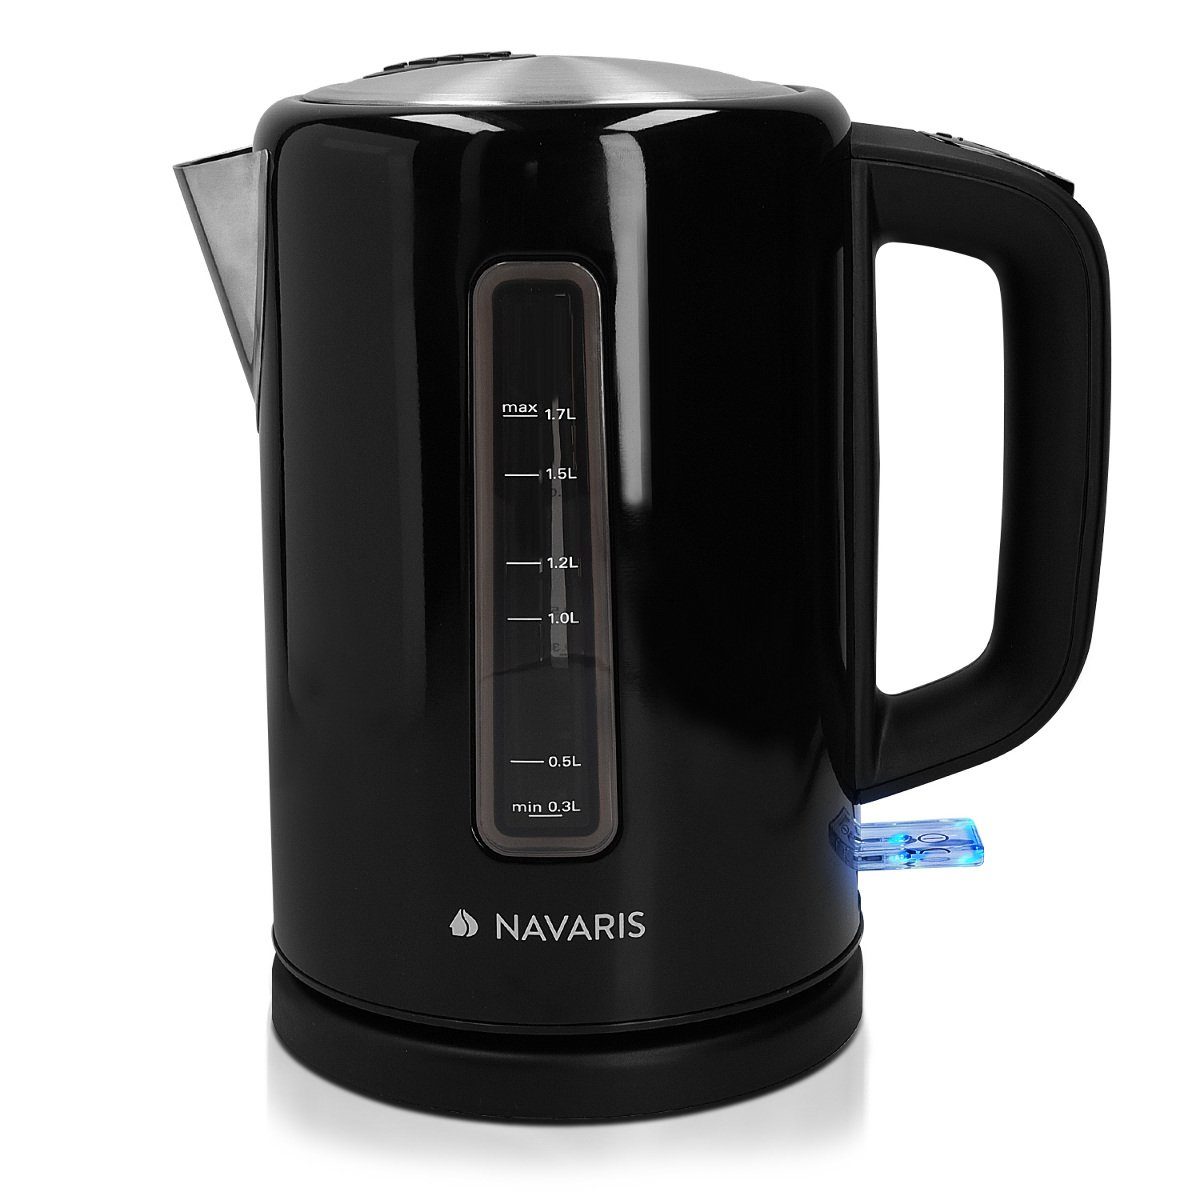 Navaris Heißgetränke- und Glühweinautomat Edelstahl - 2200W Kocher - Abschaltautomatik Wasser 1,7l